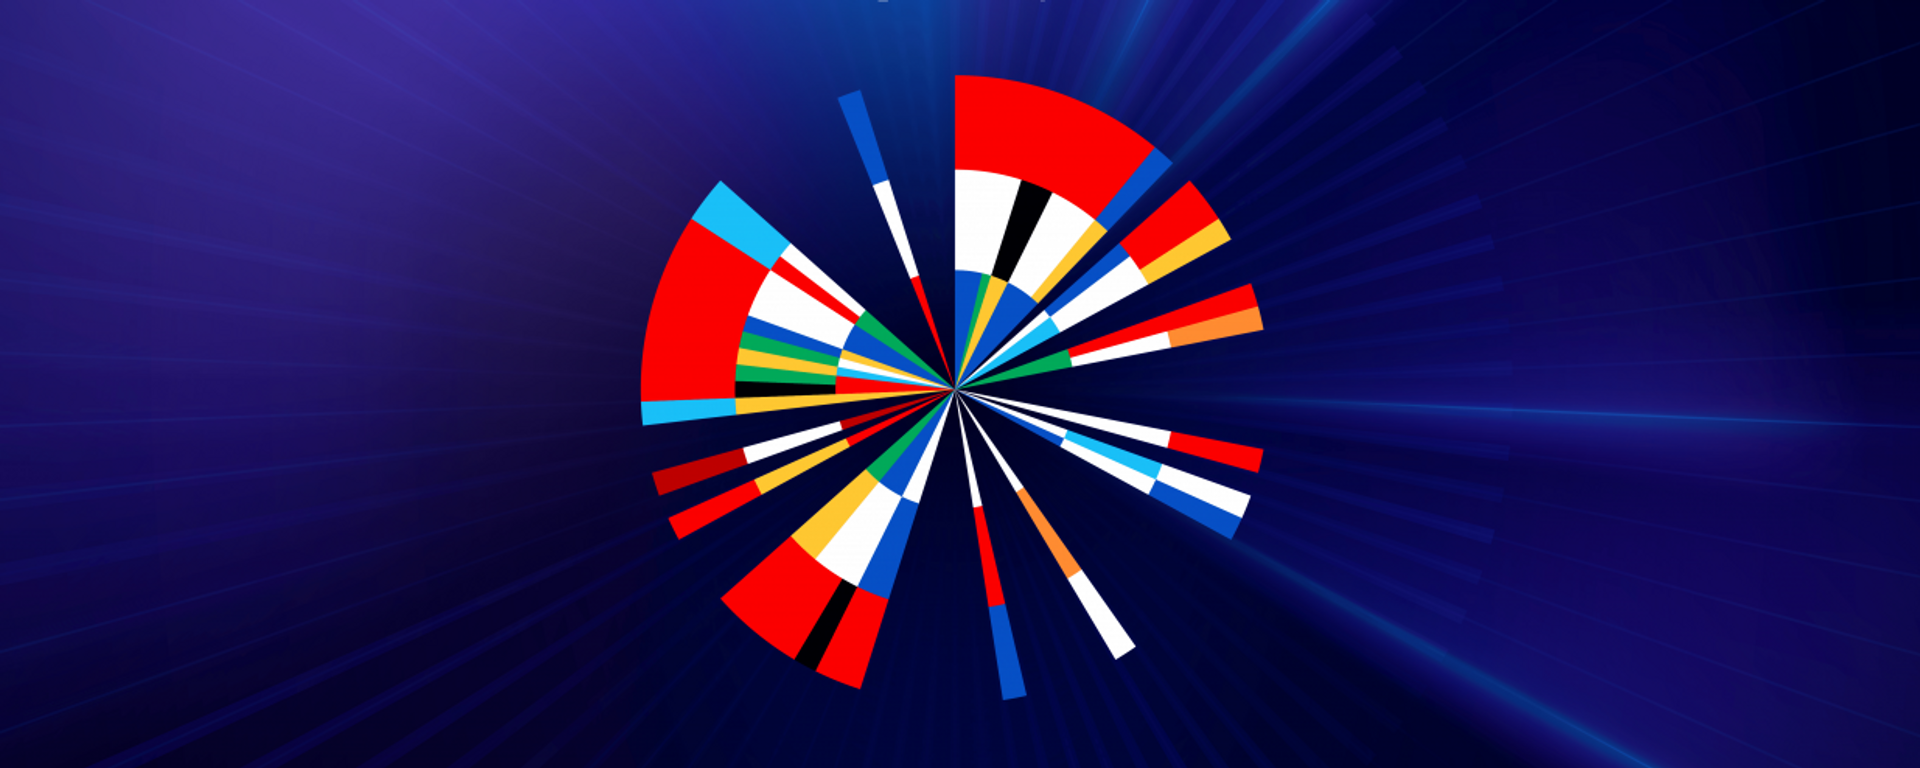 Новый логотип Евровидение 2020 - Sputnik Таджикистан, 1920, 17.05.2021